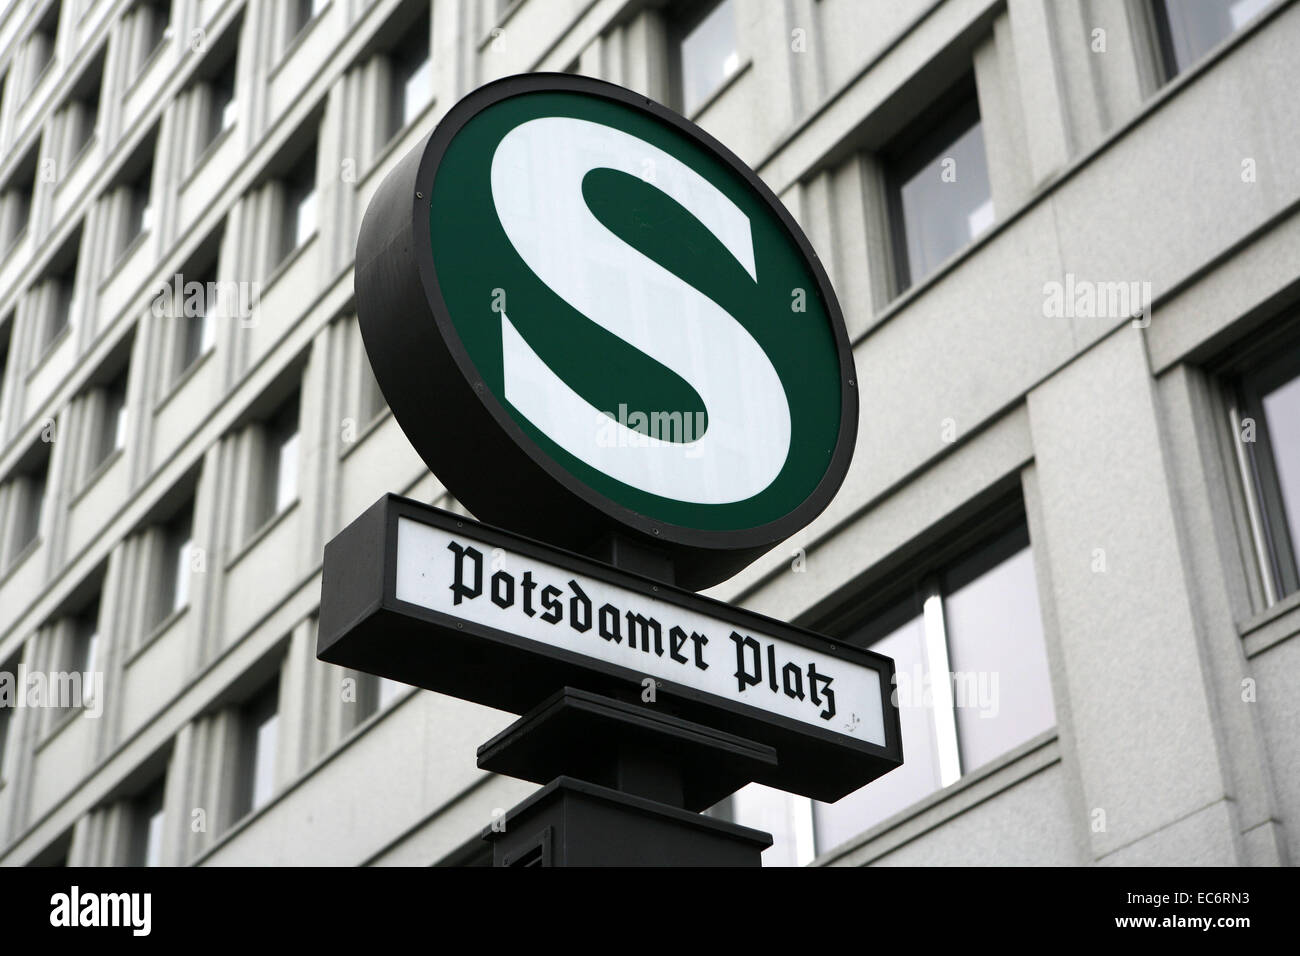 Inscrivez-podsdamer platz station sbahn Berlin Allemagne europe Banque D'Images